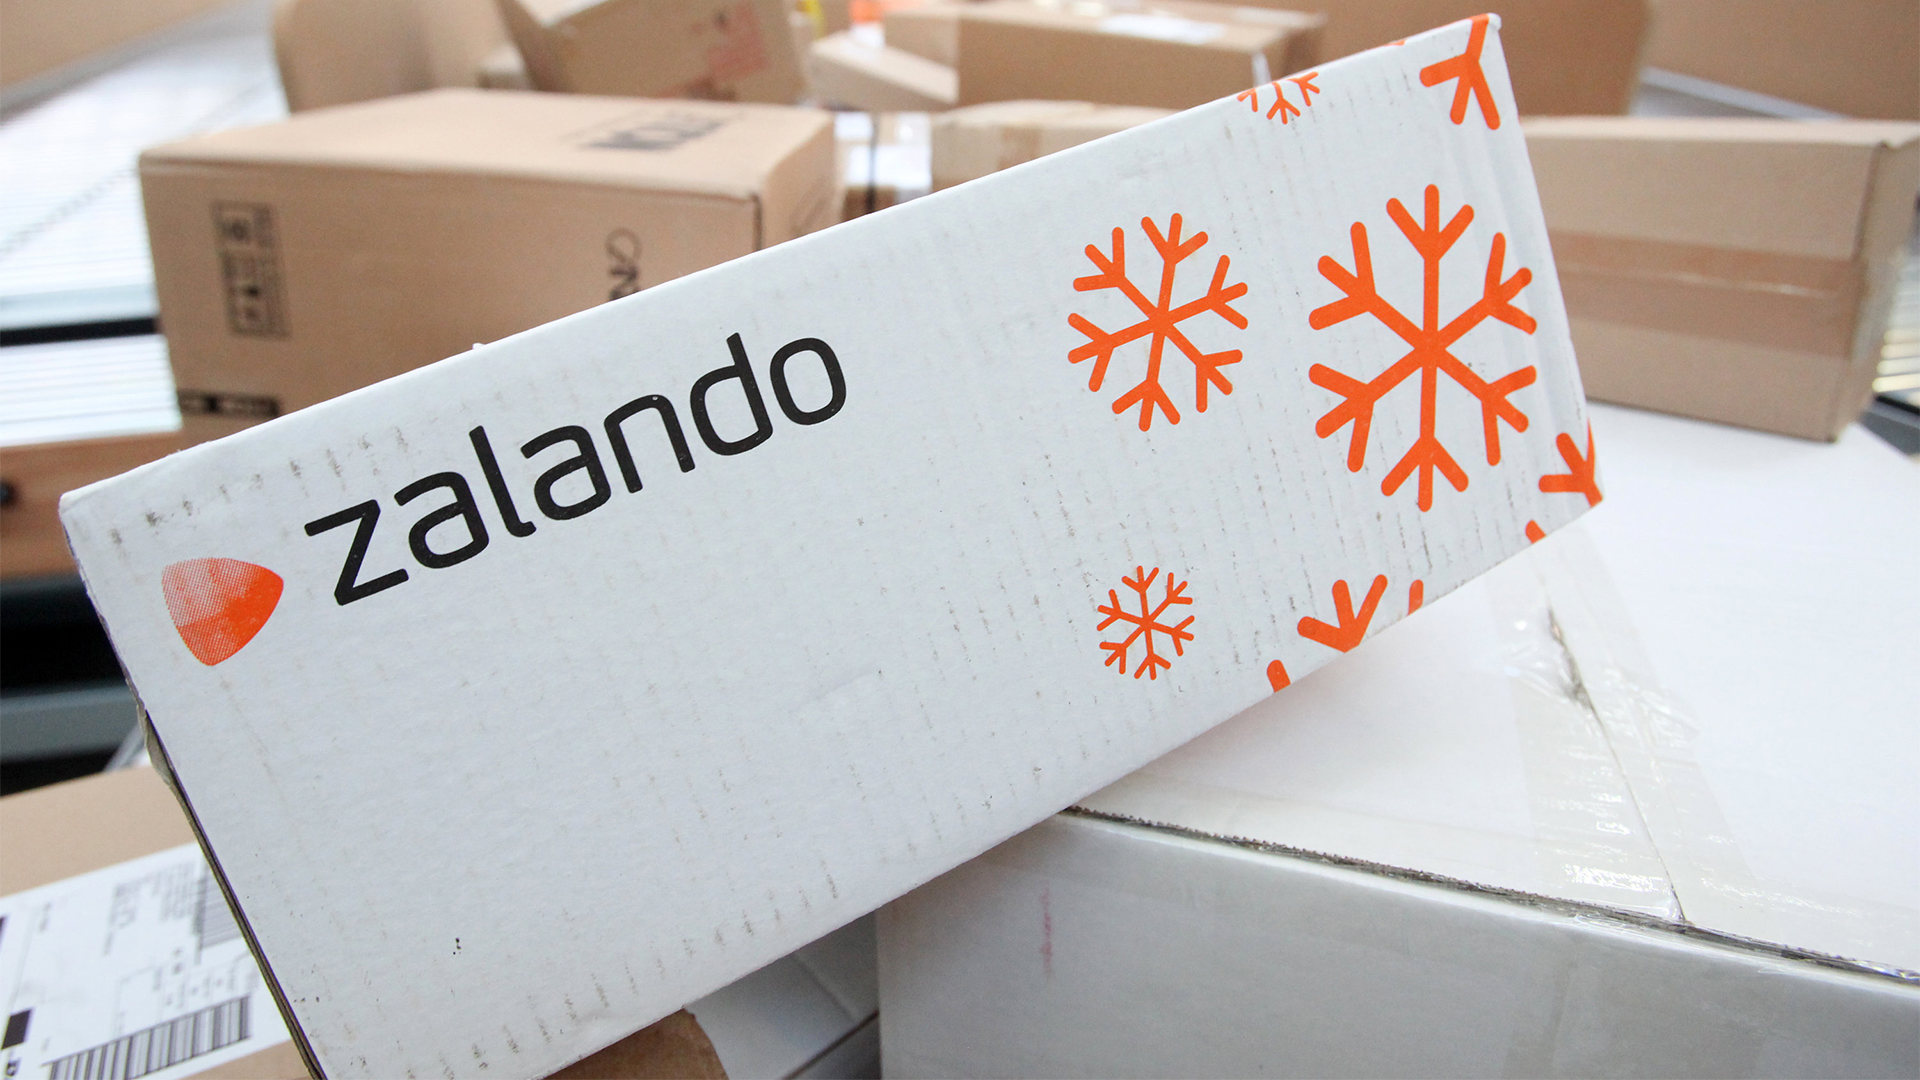 Das Zalando-Logo auf einem Karton | dpa